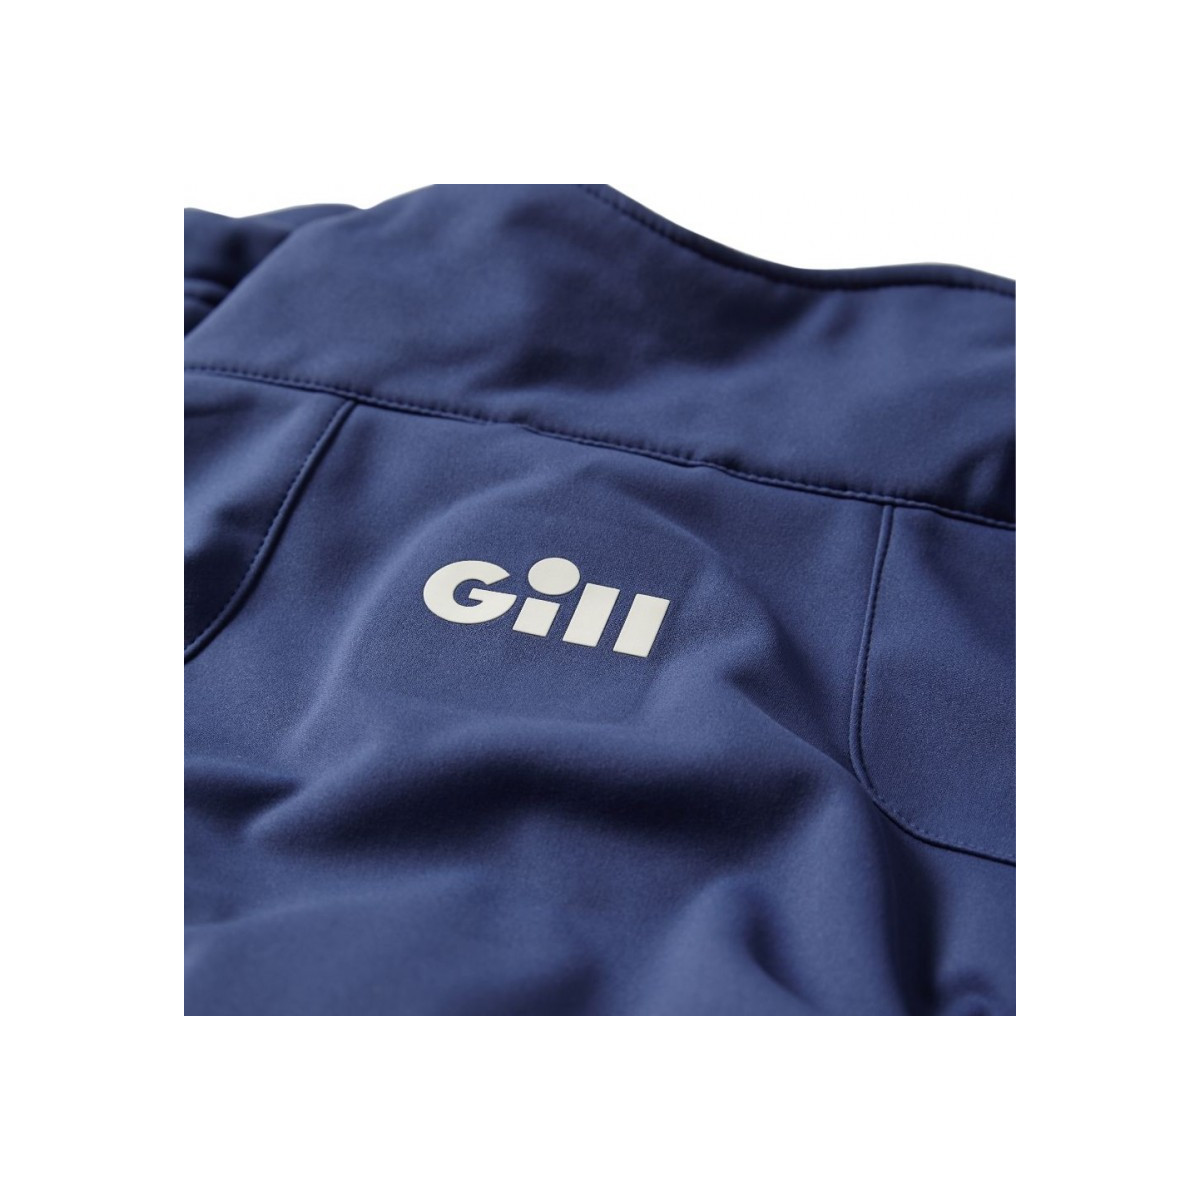 Gill Race veste Softshell homme bleu foncé, taille XXL